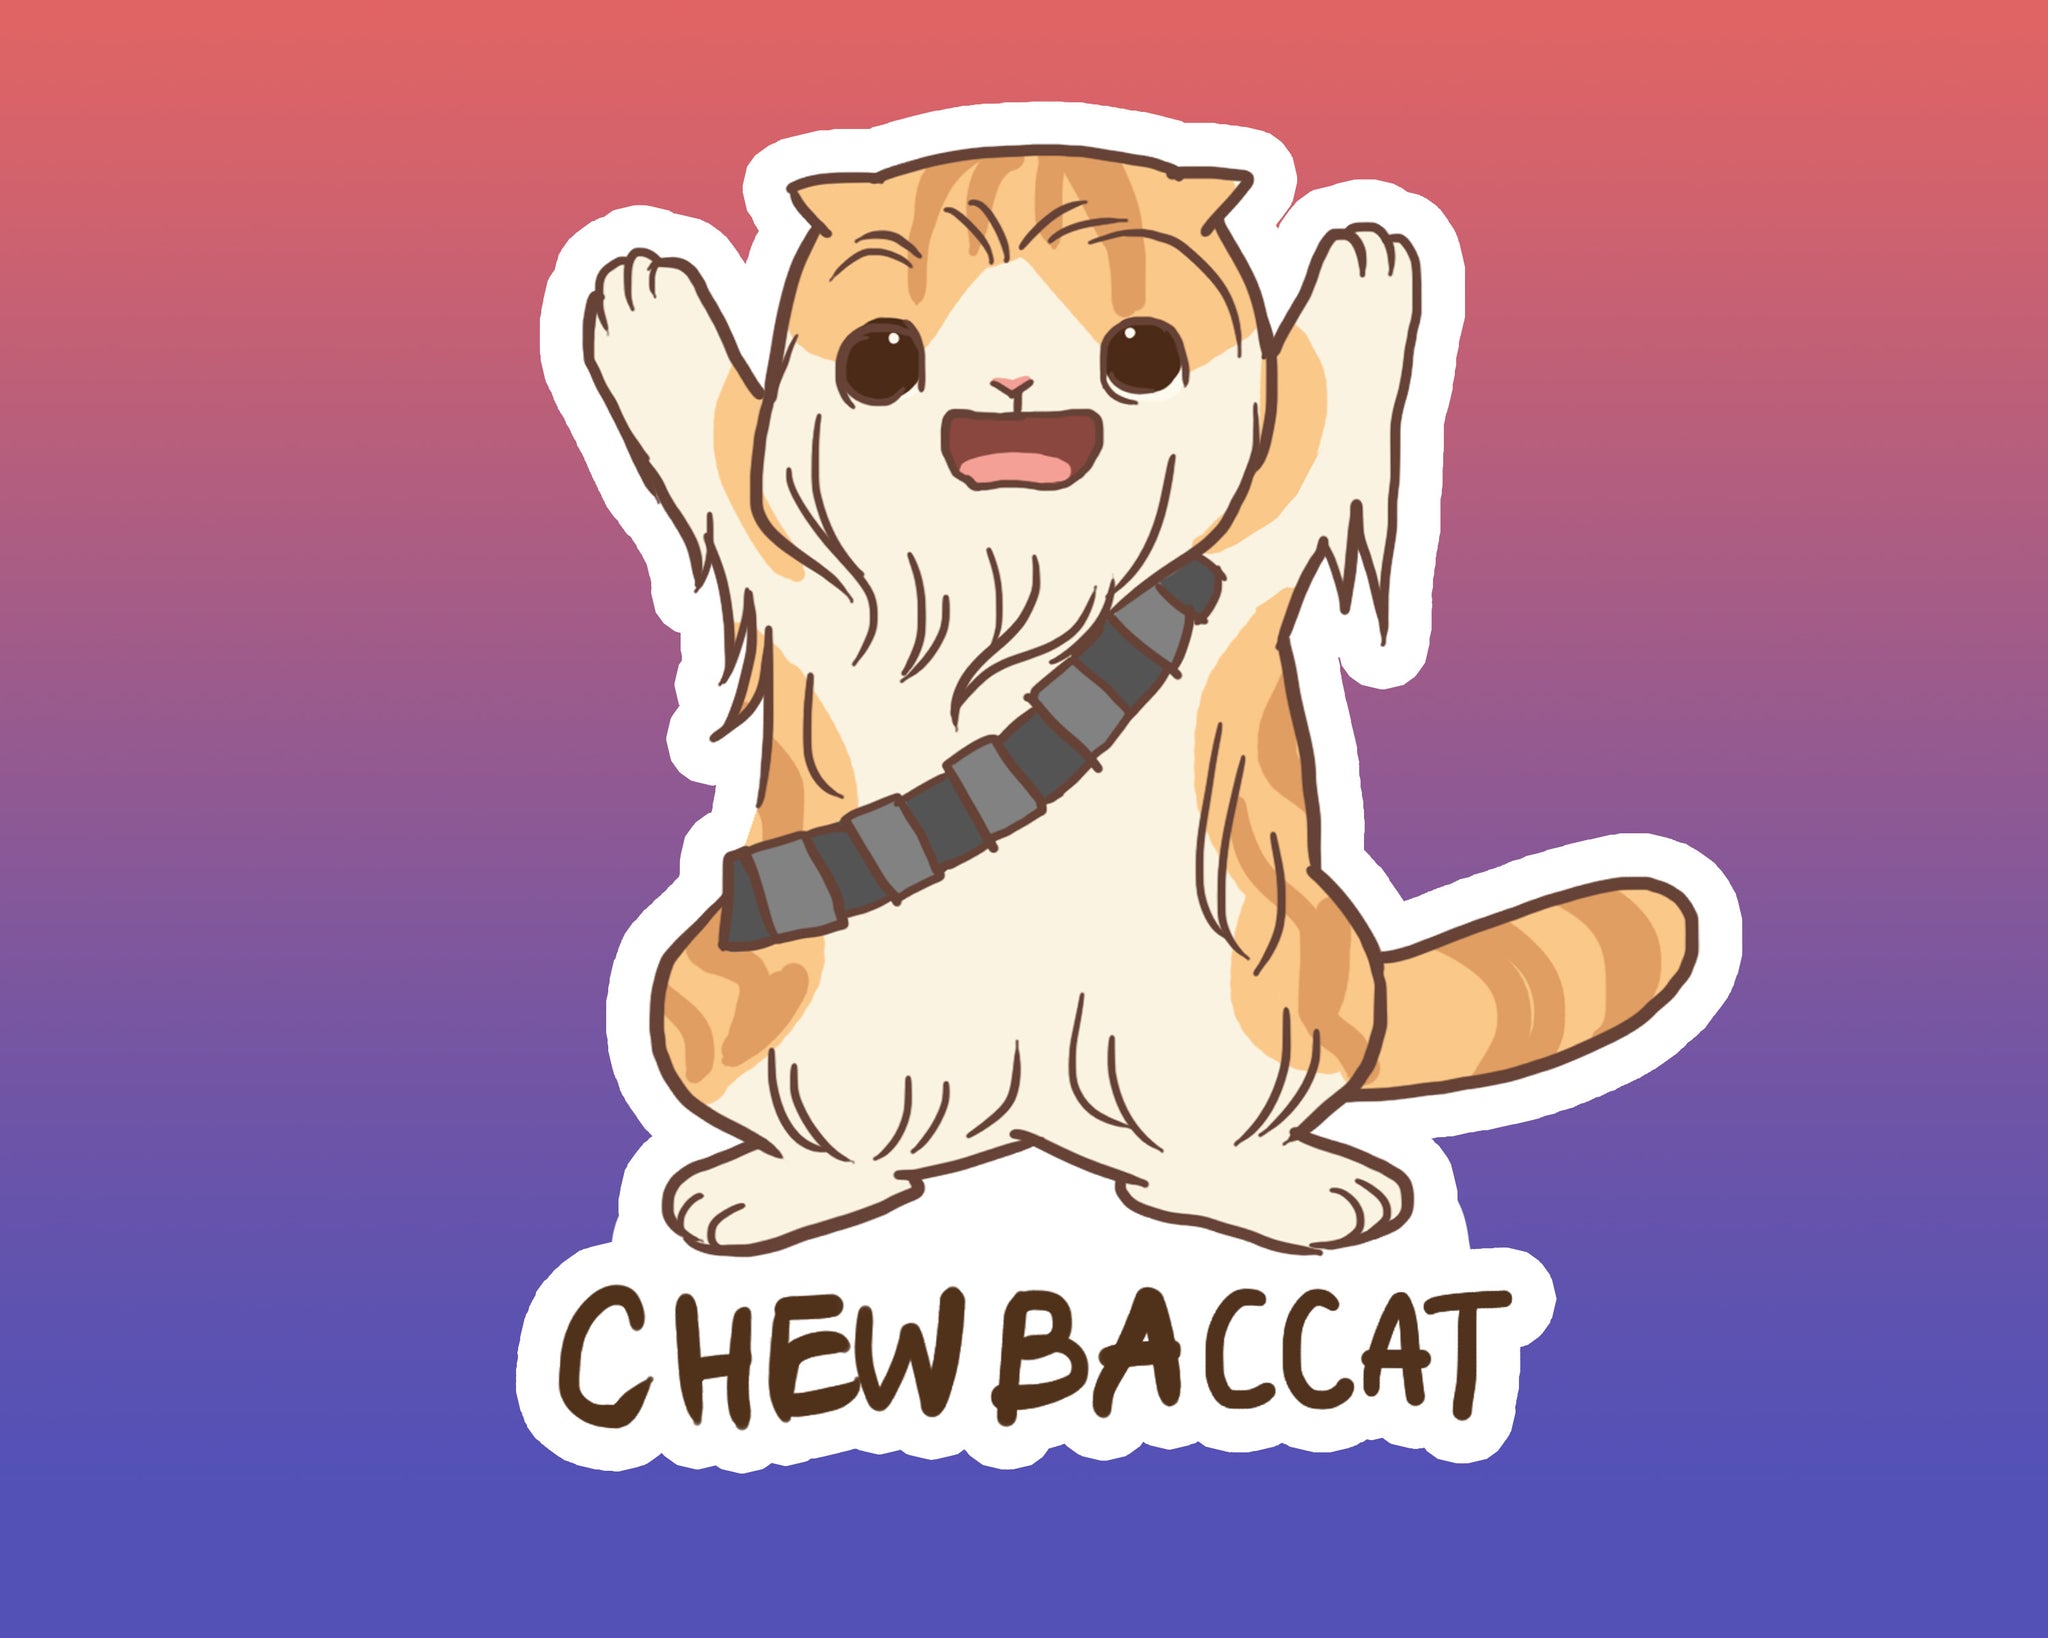 Chewbaccat Sticker